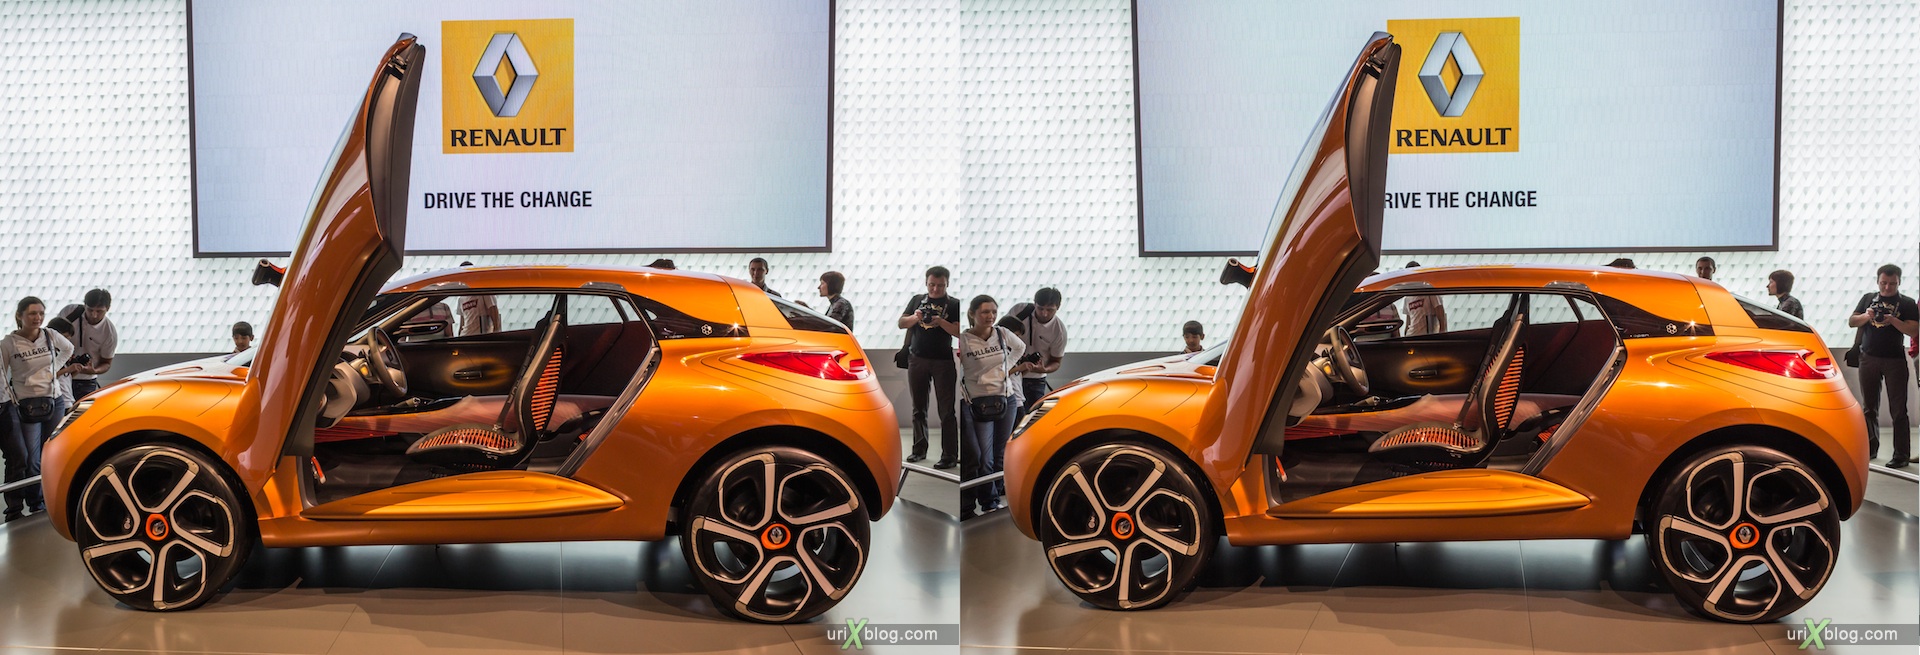 2012, Renault Captur, Московский международный автомобильный салон, ММАС, Крокус Экспо, 3D, стереопара